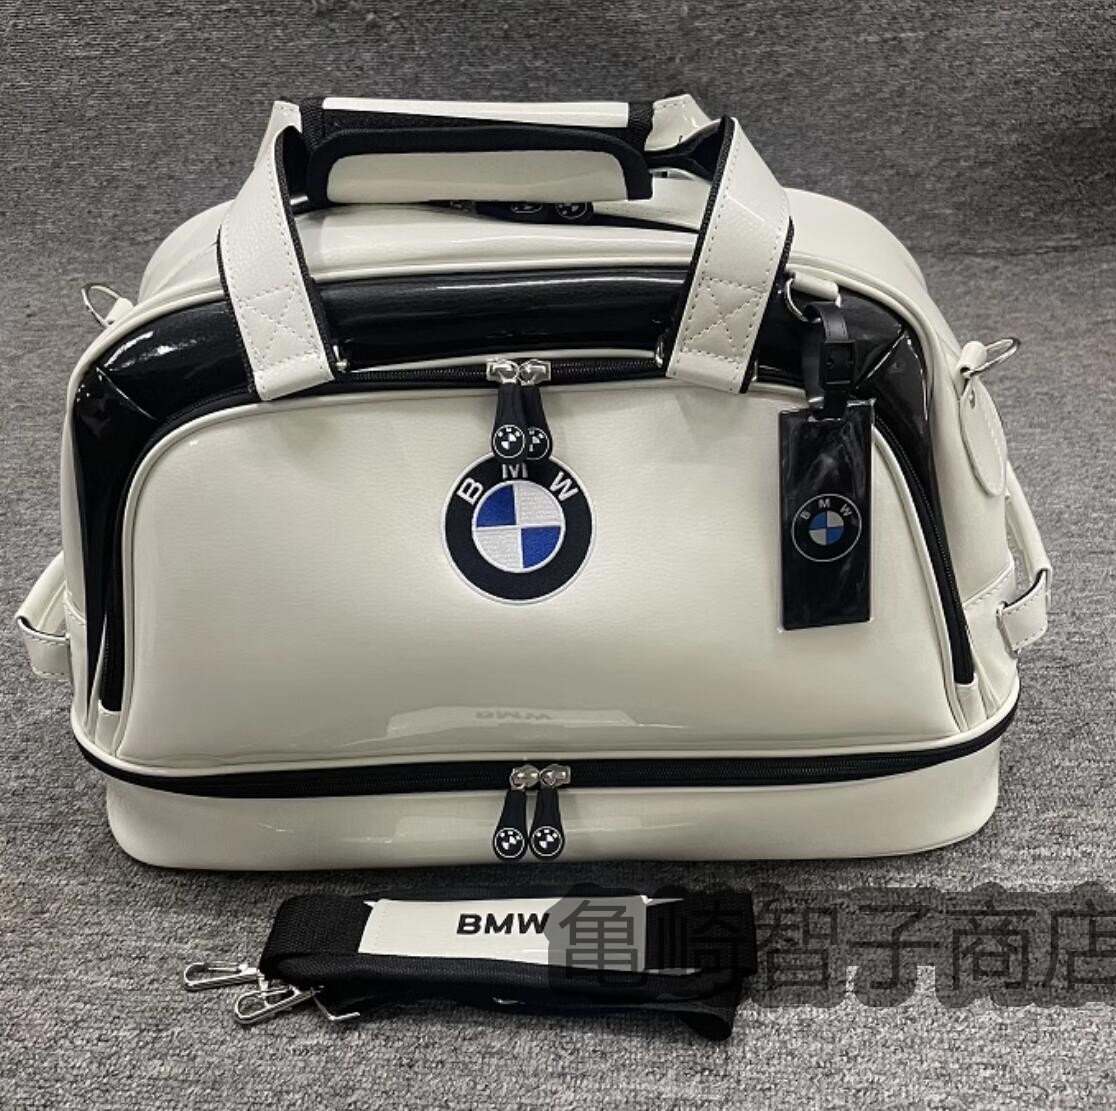 激レア BMW ロゴ ゴルフ衣類収納バッグ 靴バッグ フィットネス旅行収納バッグ ハンドバッグショルダーバッグ多機能収納_画像1